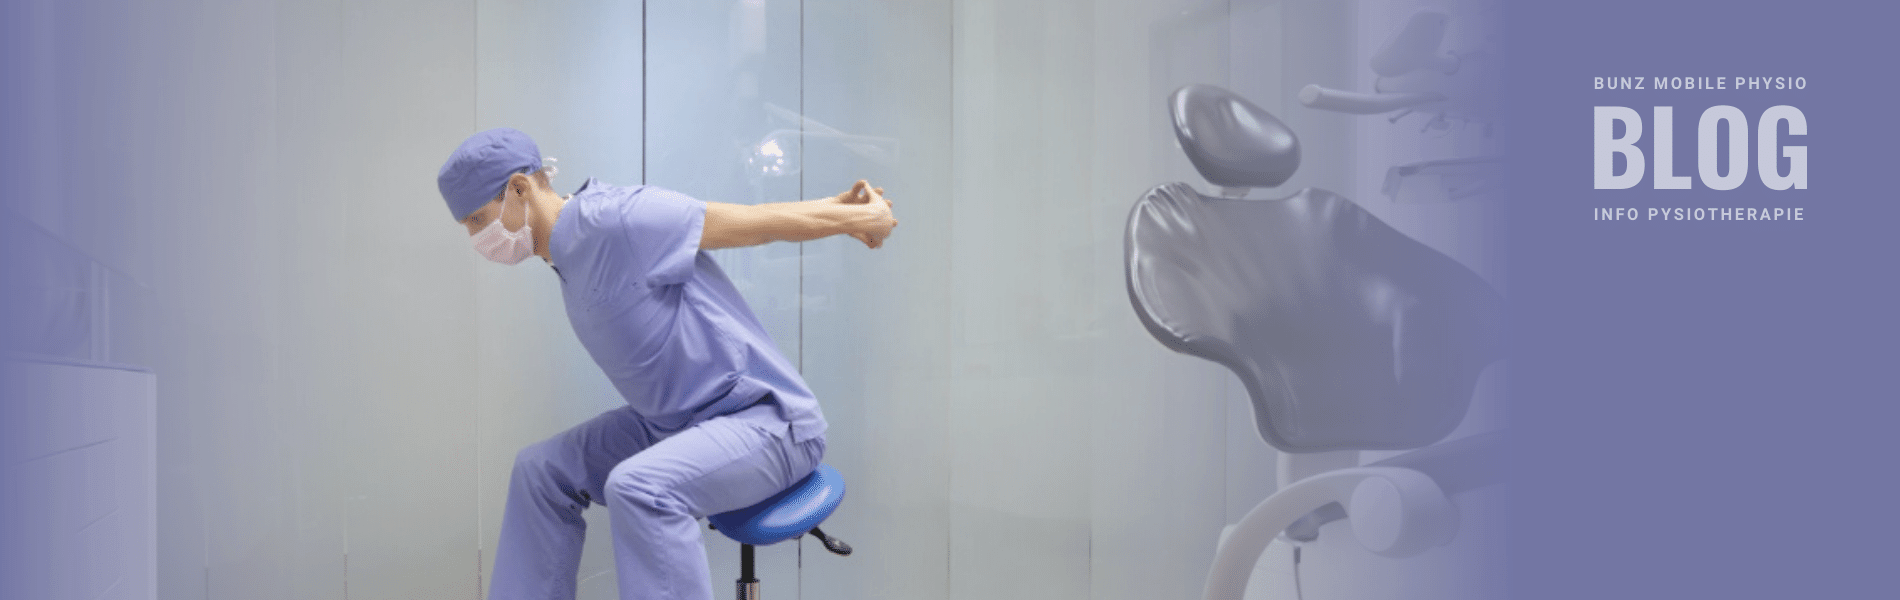 Mitarbeiter einer Zahnarztpraxis bei einer Übung, um Rückenproblemen vorzubeugen